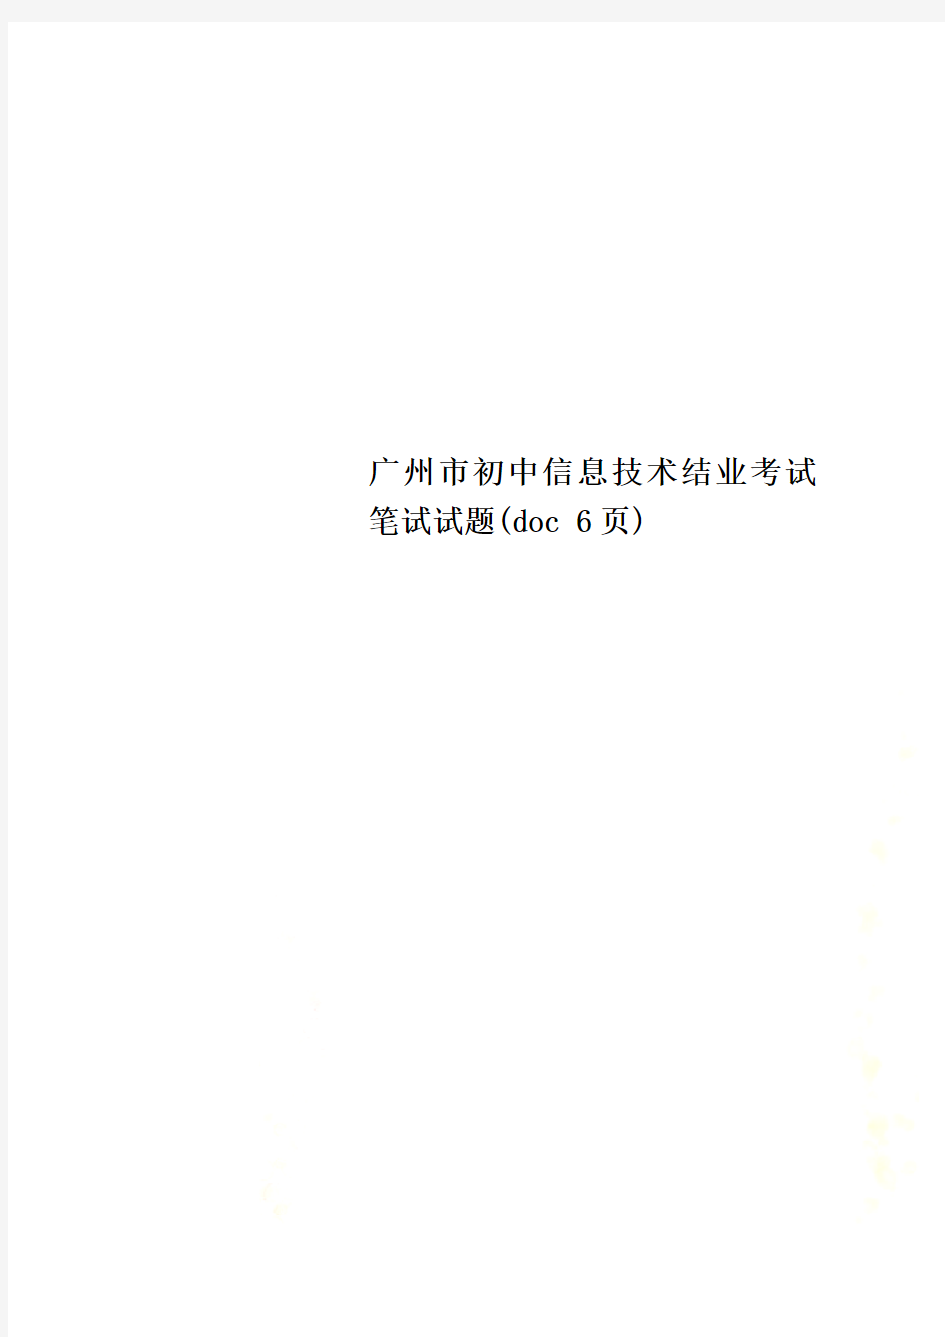 广州市初中信息技术结业考试笔试试题(doc 6页)